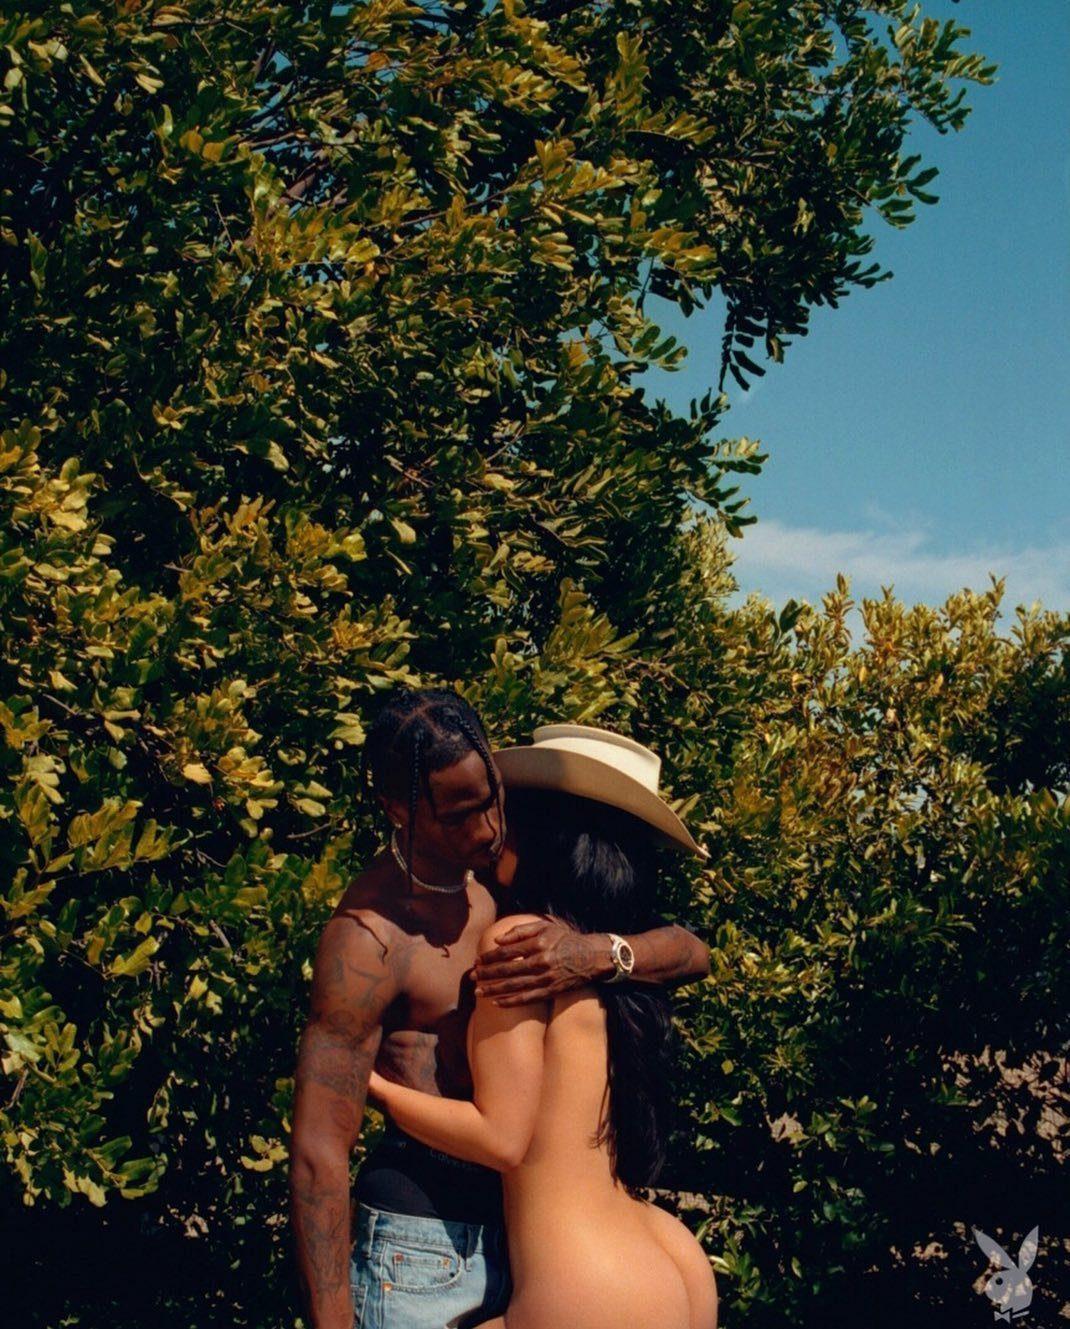 Kylie Jenner Playboy Photoshoot Leaked 8